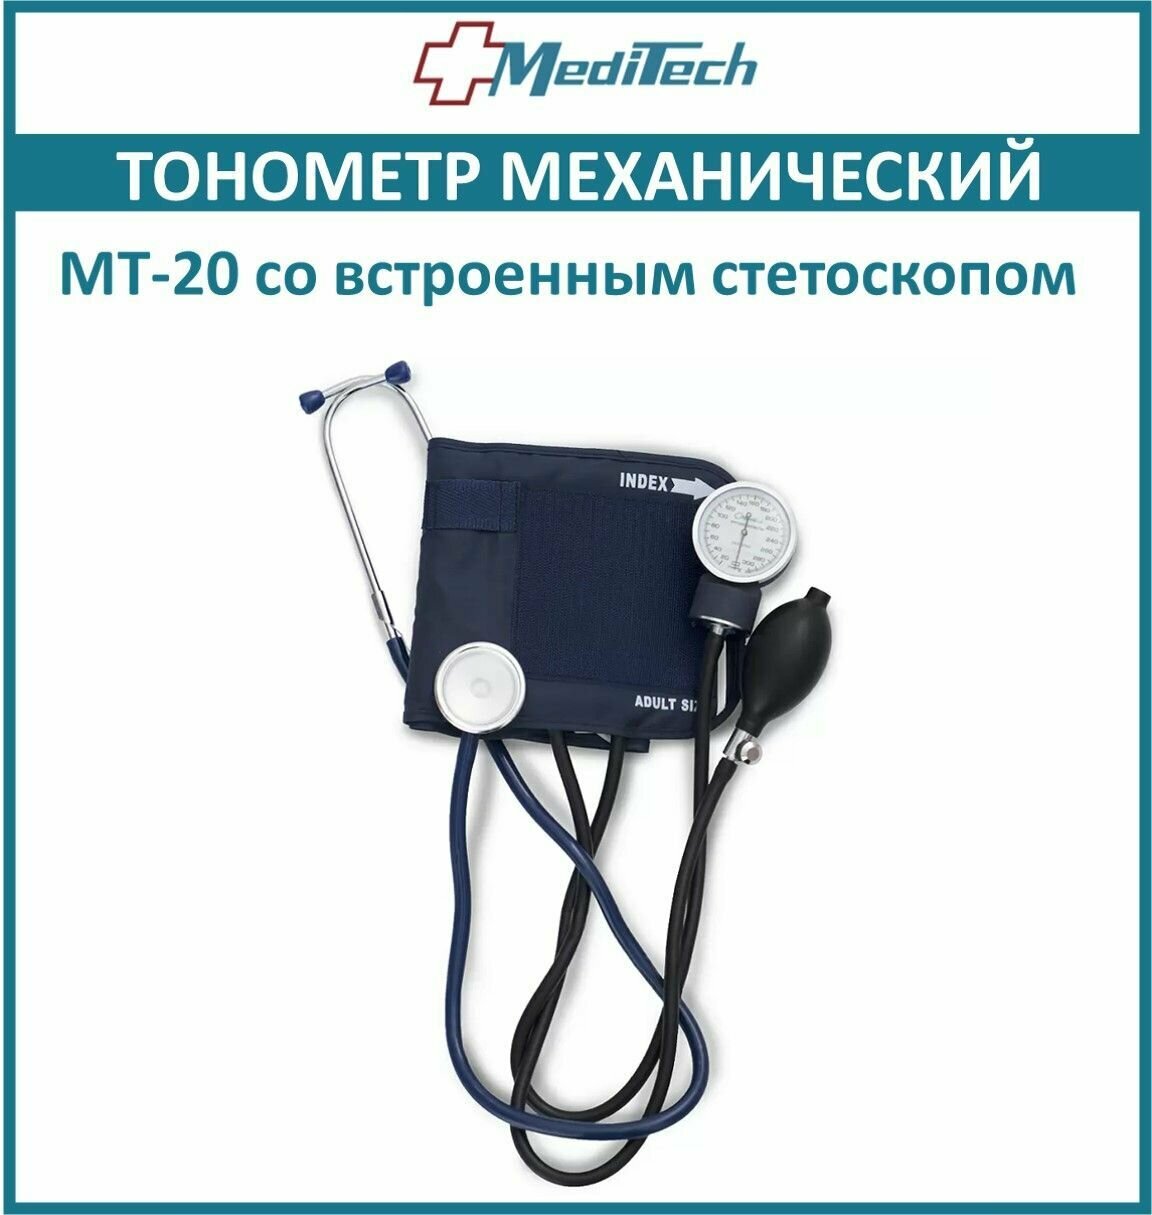 Тонометр механический MediTechMT-20 со встроенным стетоскопом, менжетка 26-36см